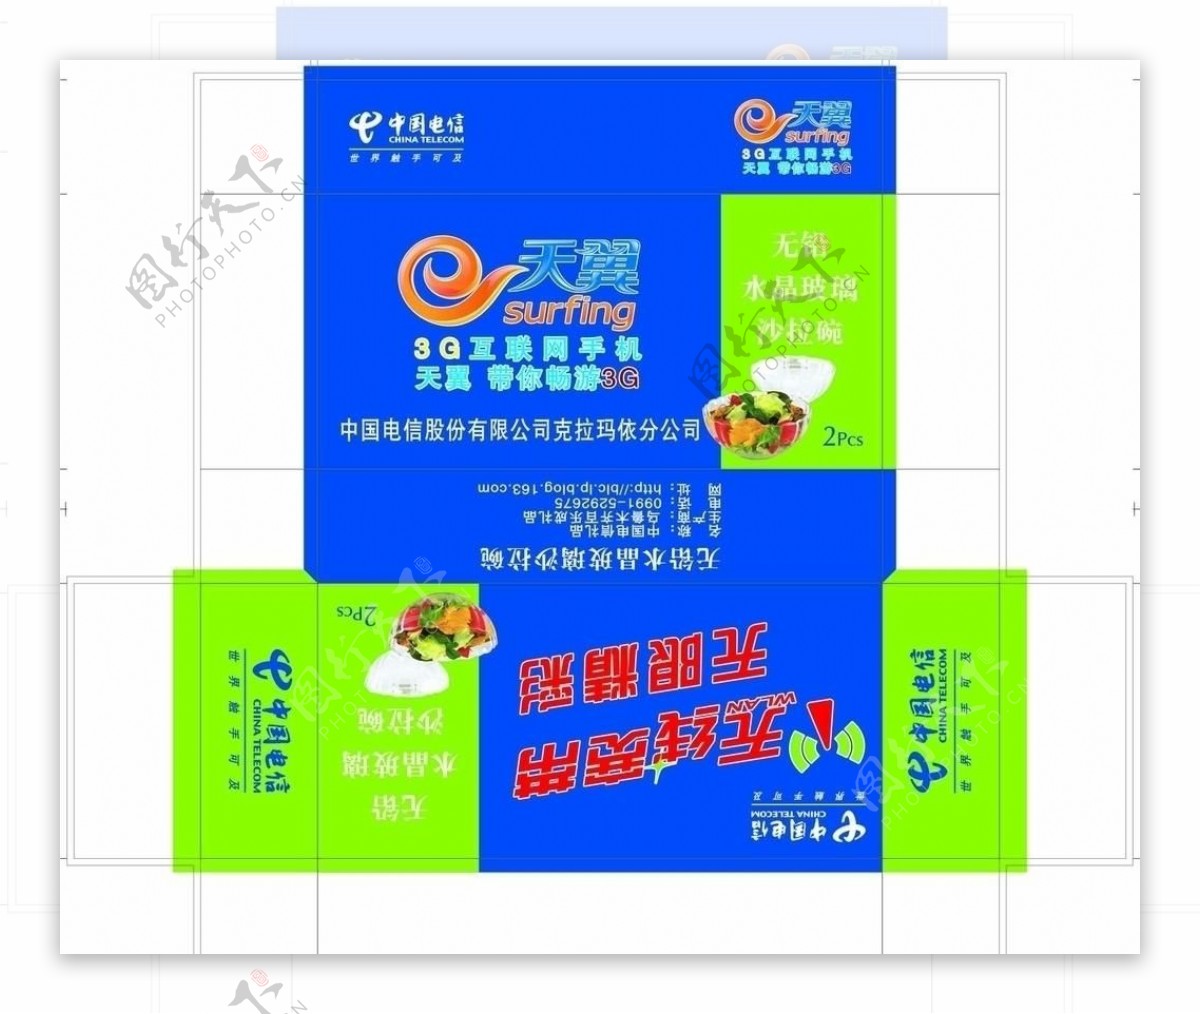 中国电信盒子图片